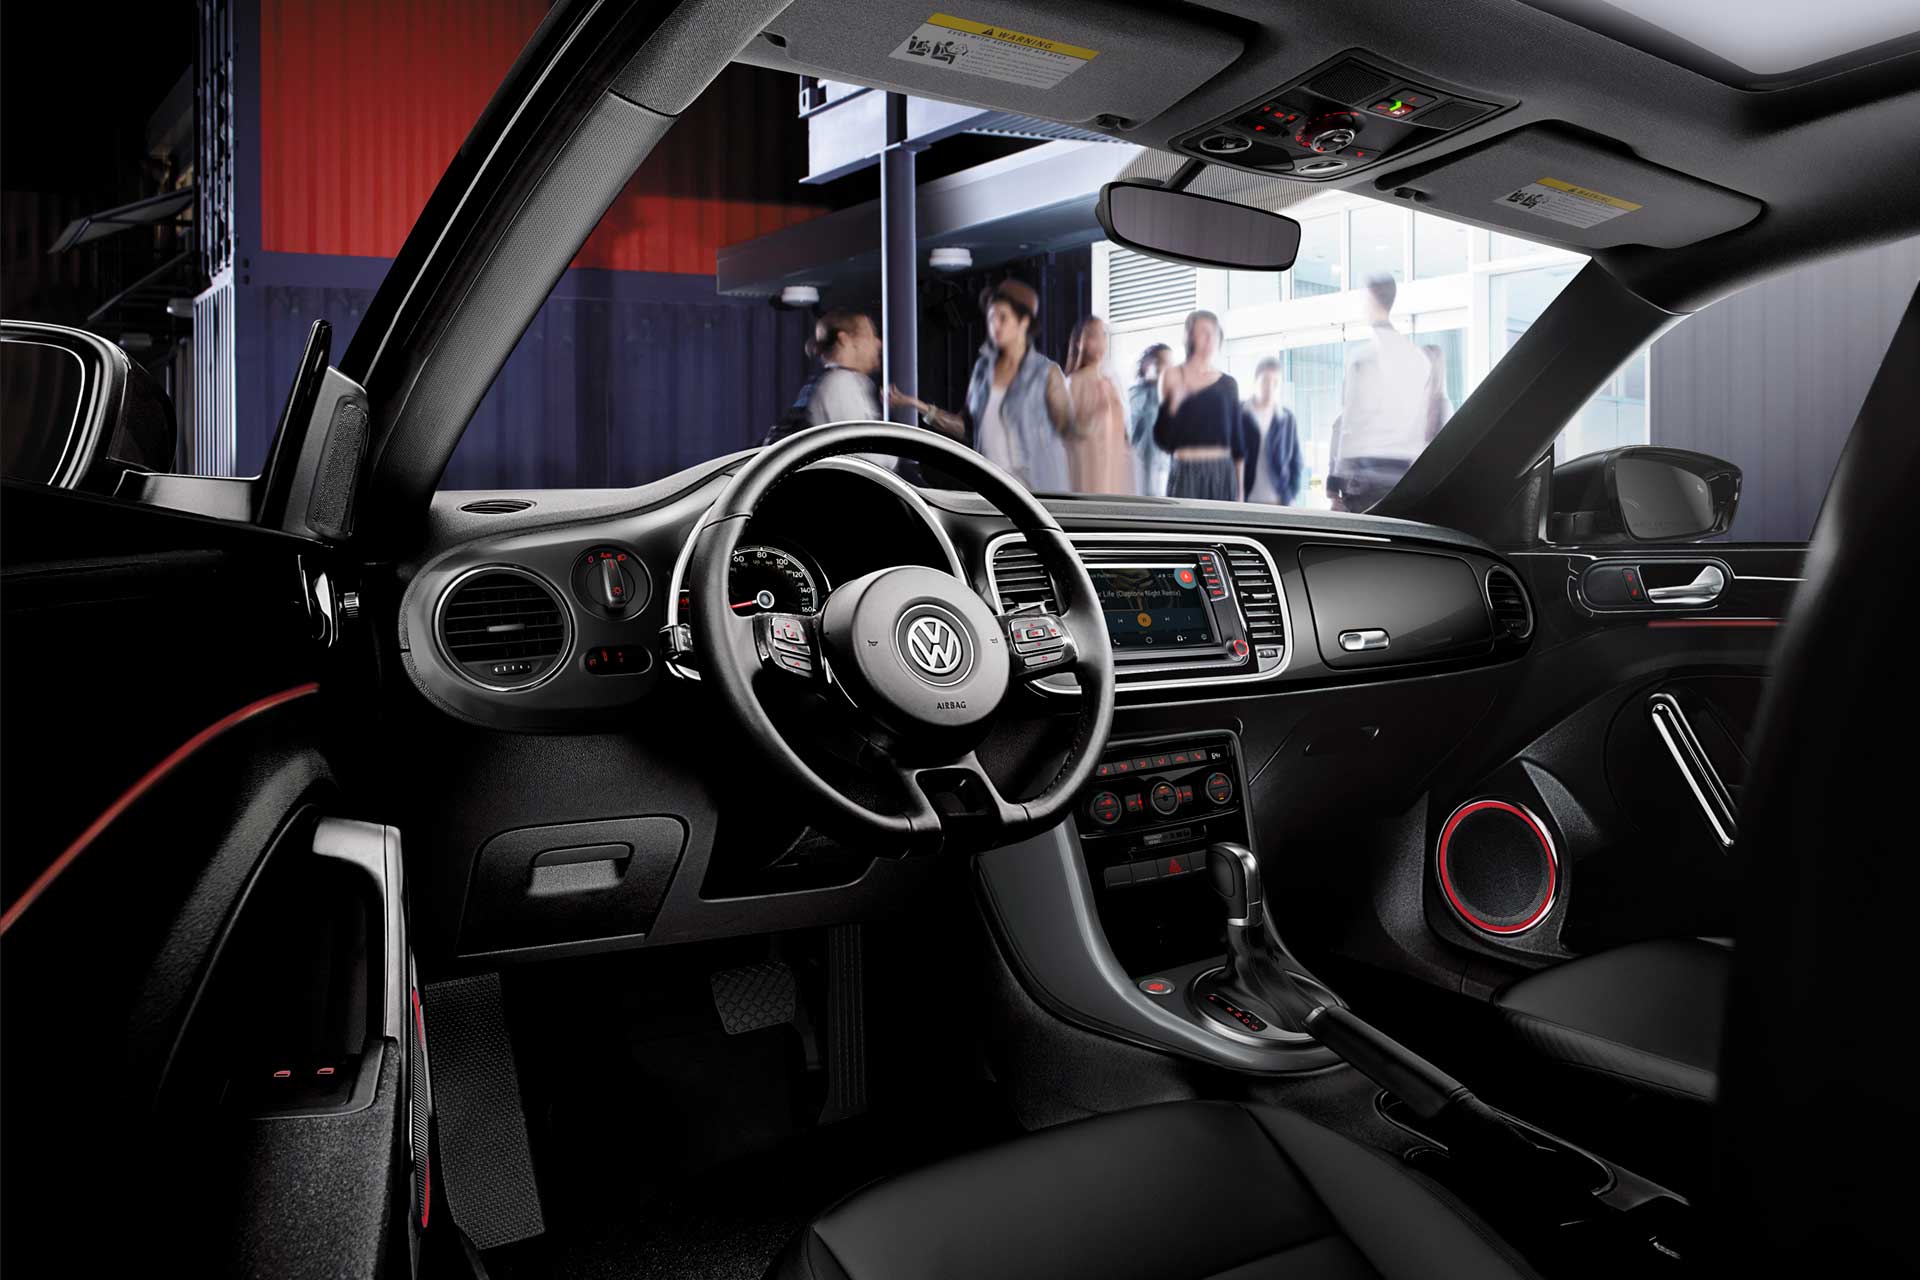 Interior Design of the 2018 Volkswagen Beetle